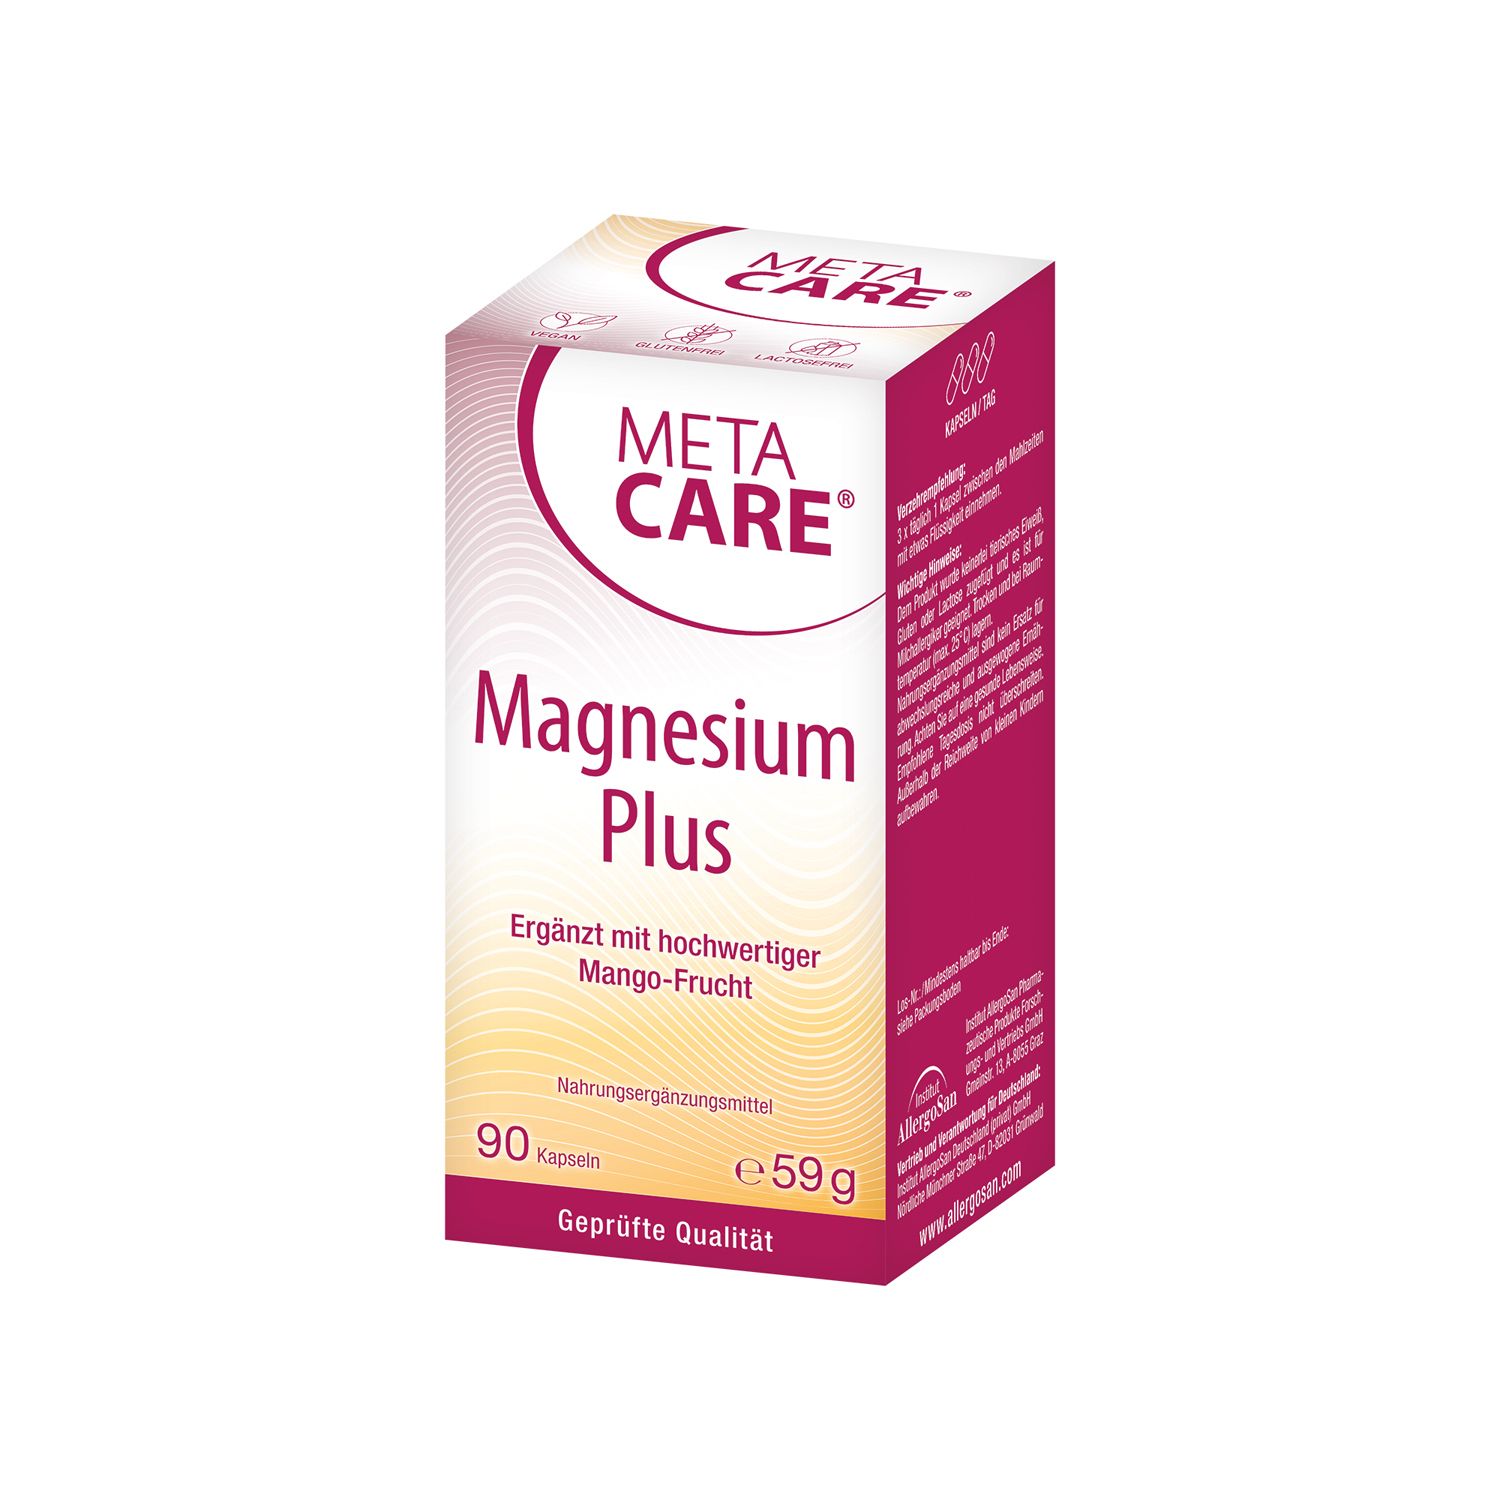 META CARE® Magnesium Plus